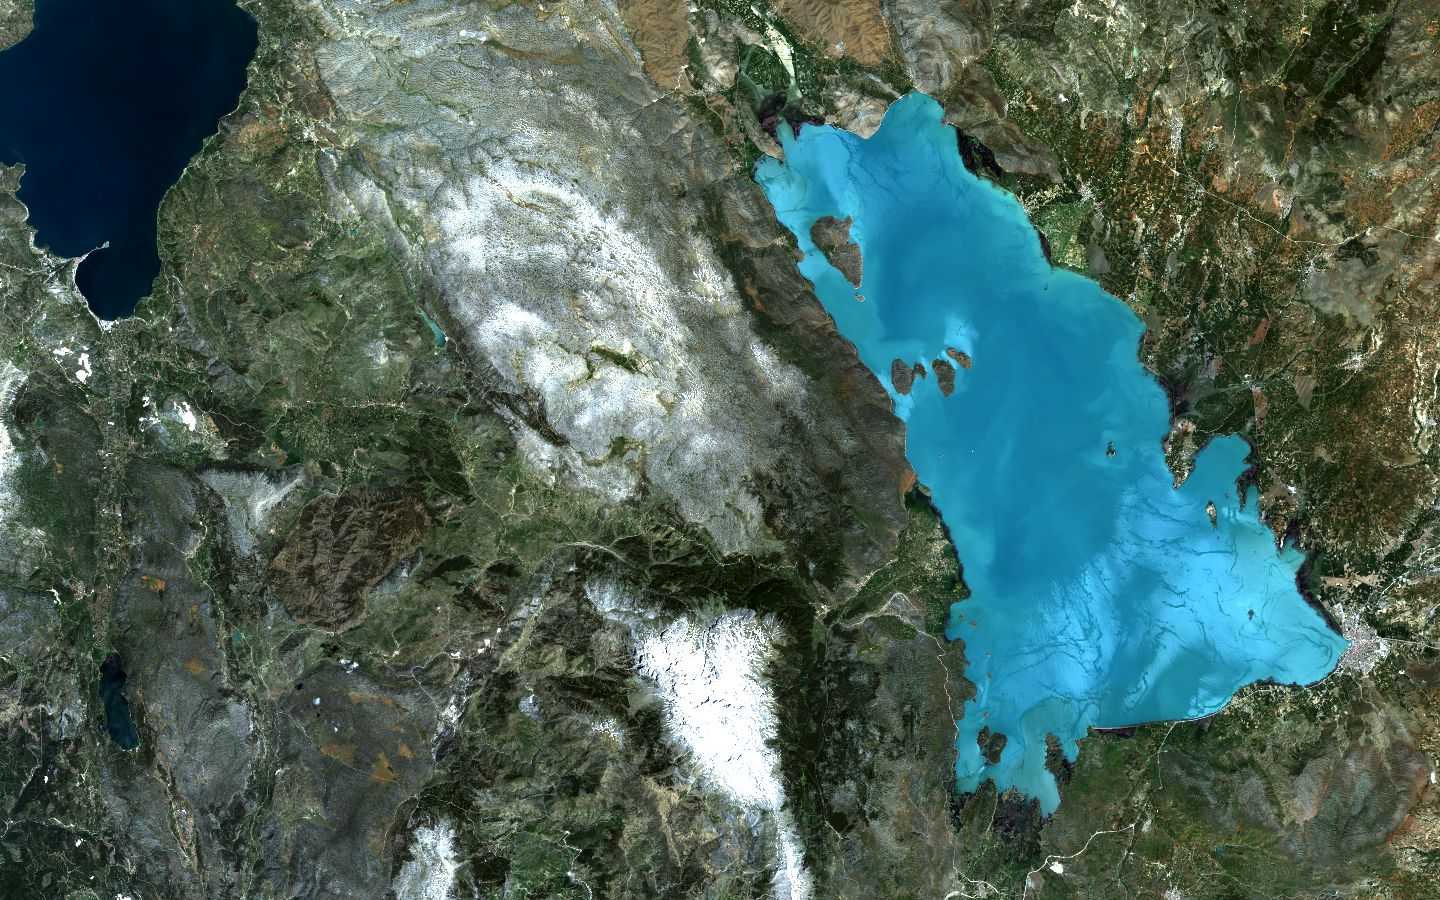 Lake Beysehir, Turkey